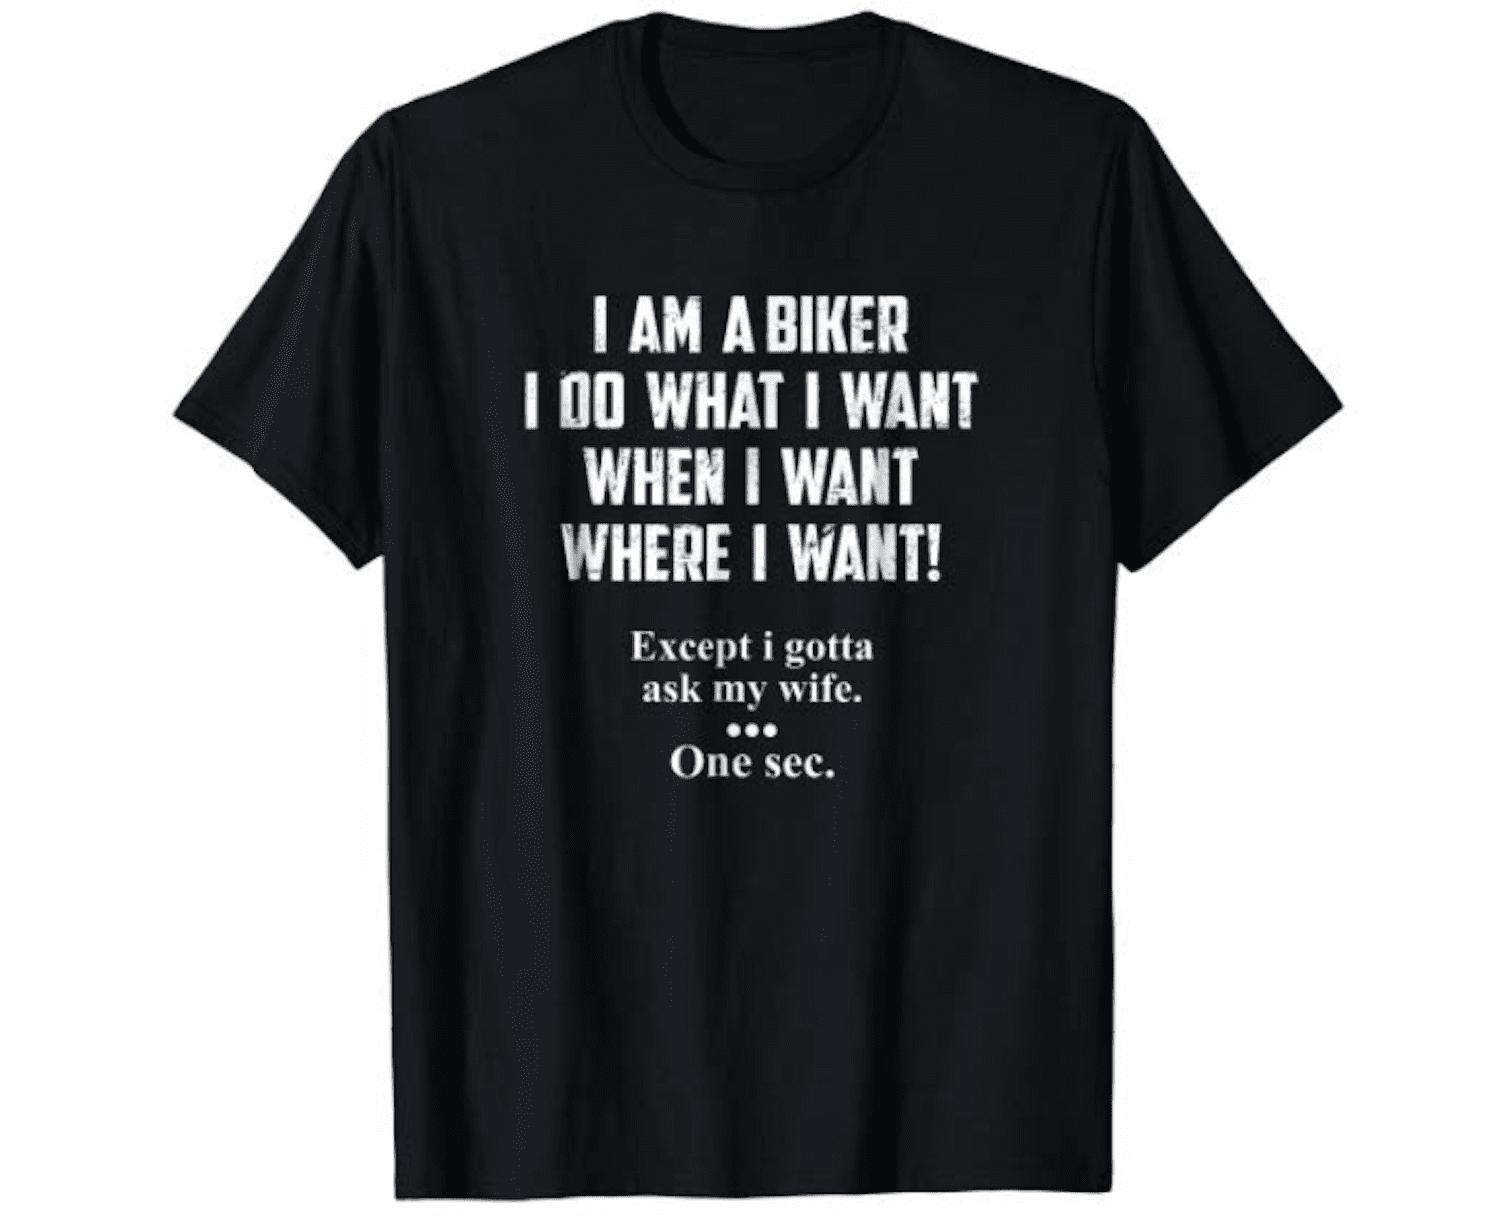 I'm a biker humor shirt